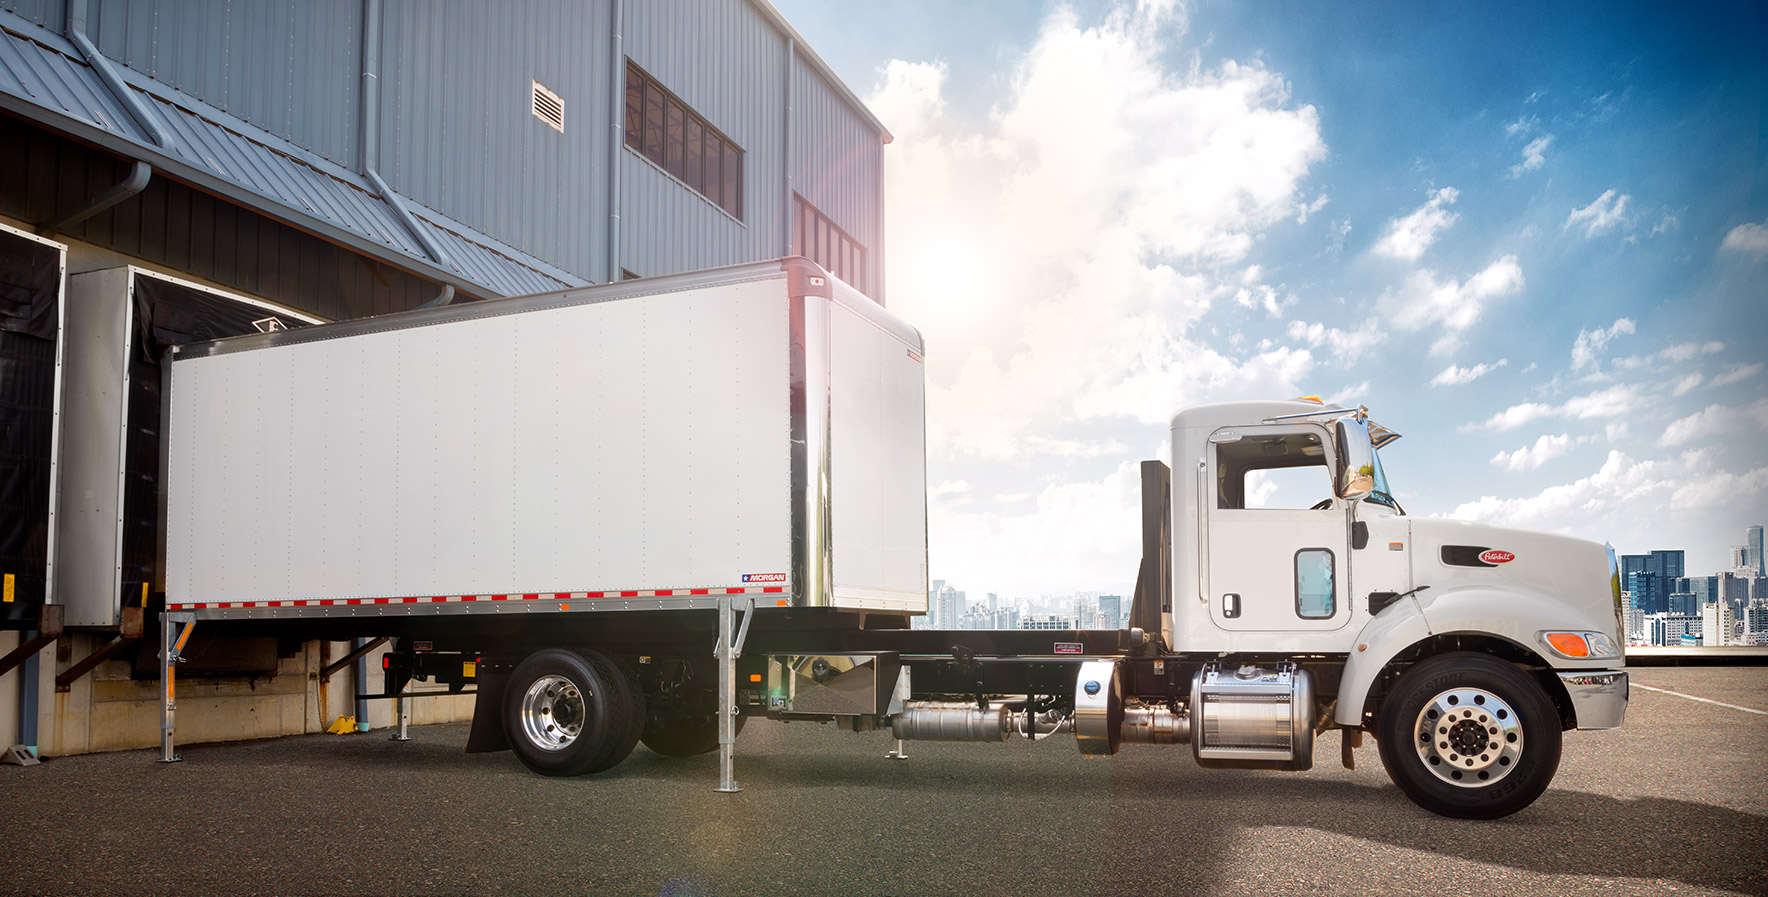 Carrosseries de camion Demountable Concepts détachées du châssis sur un quai de chargement